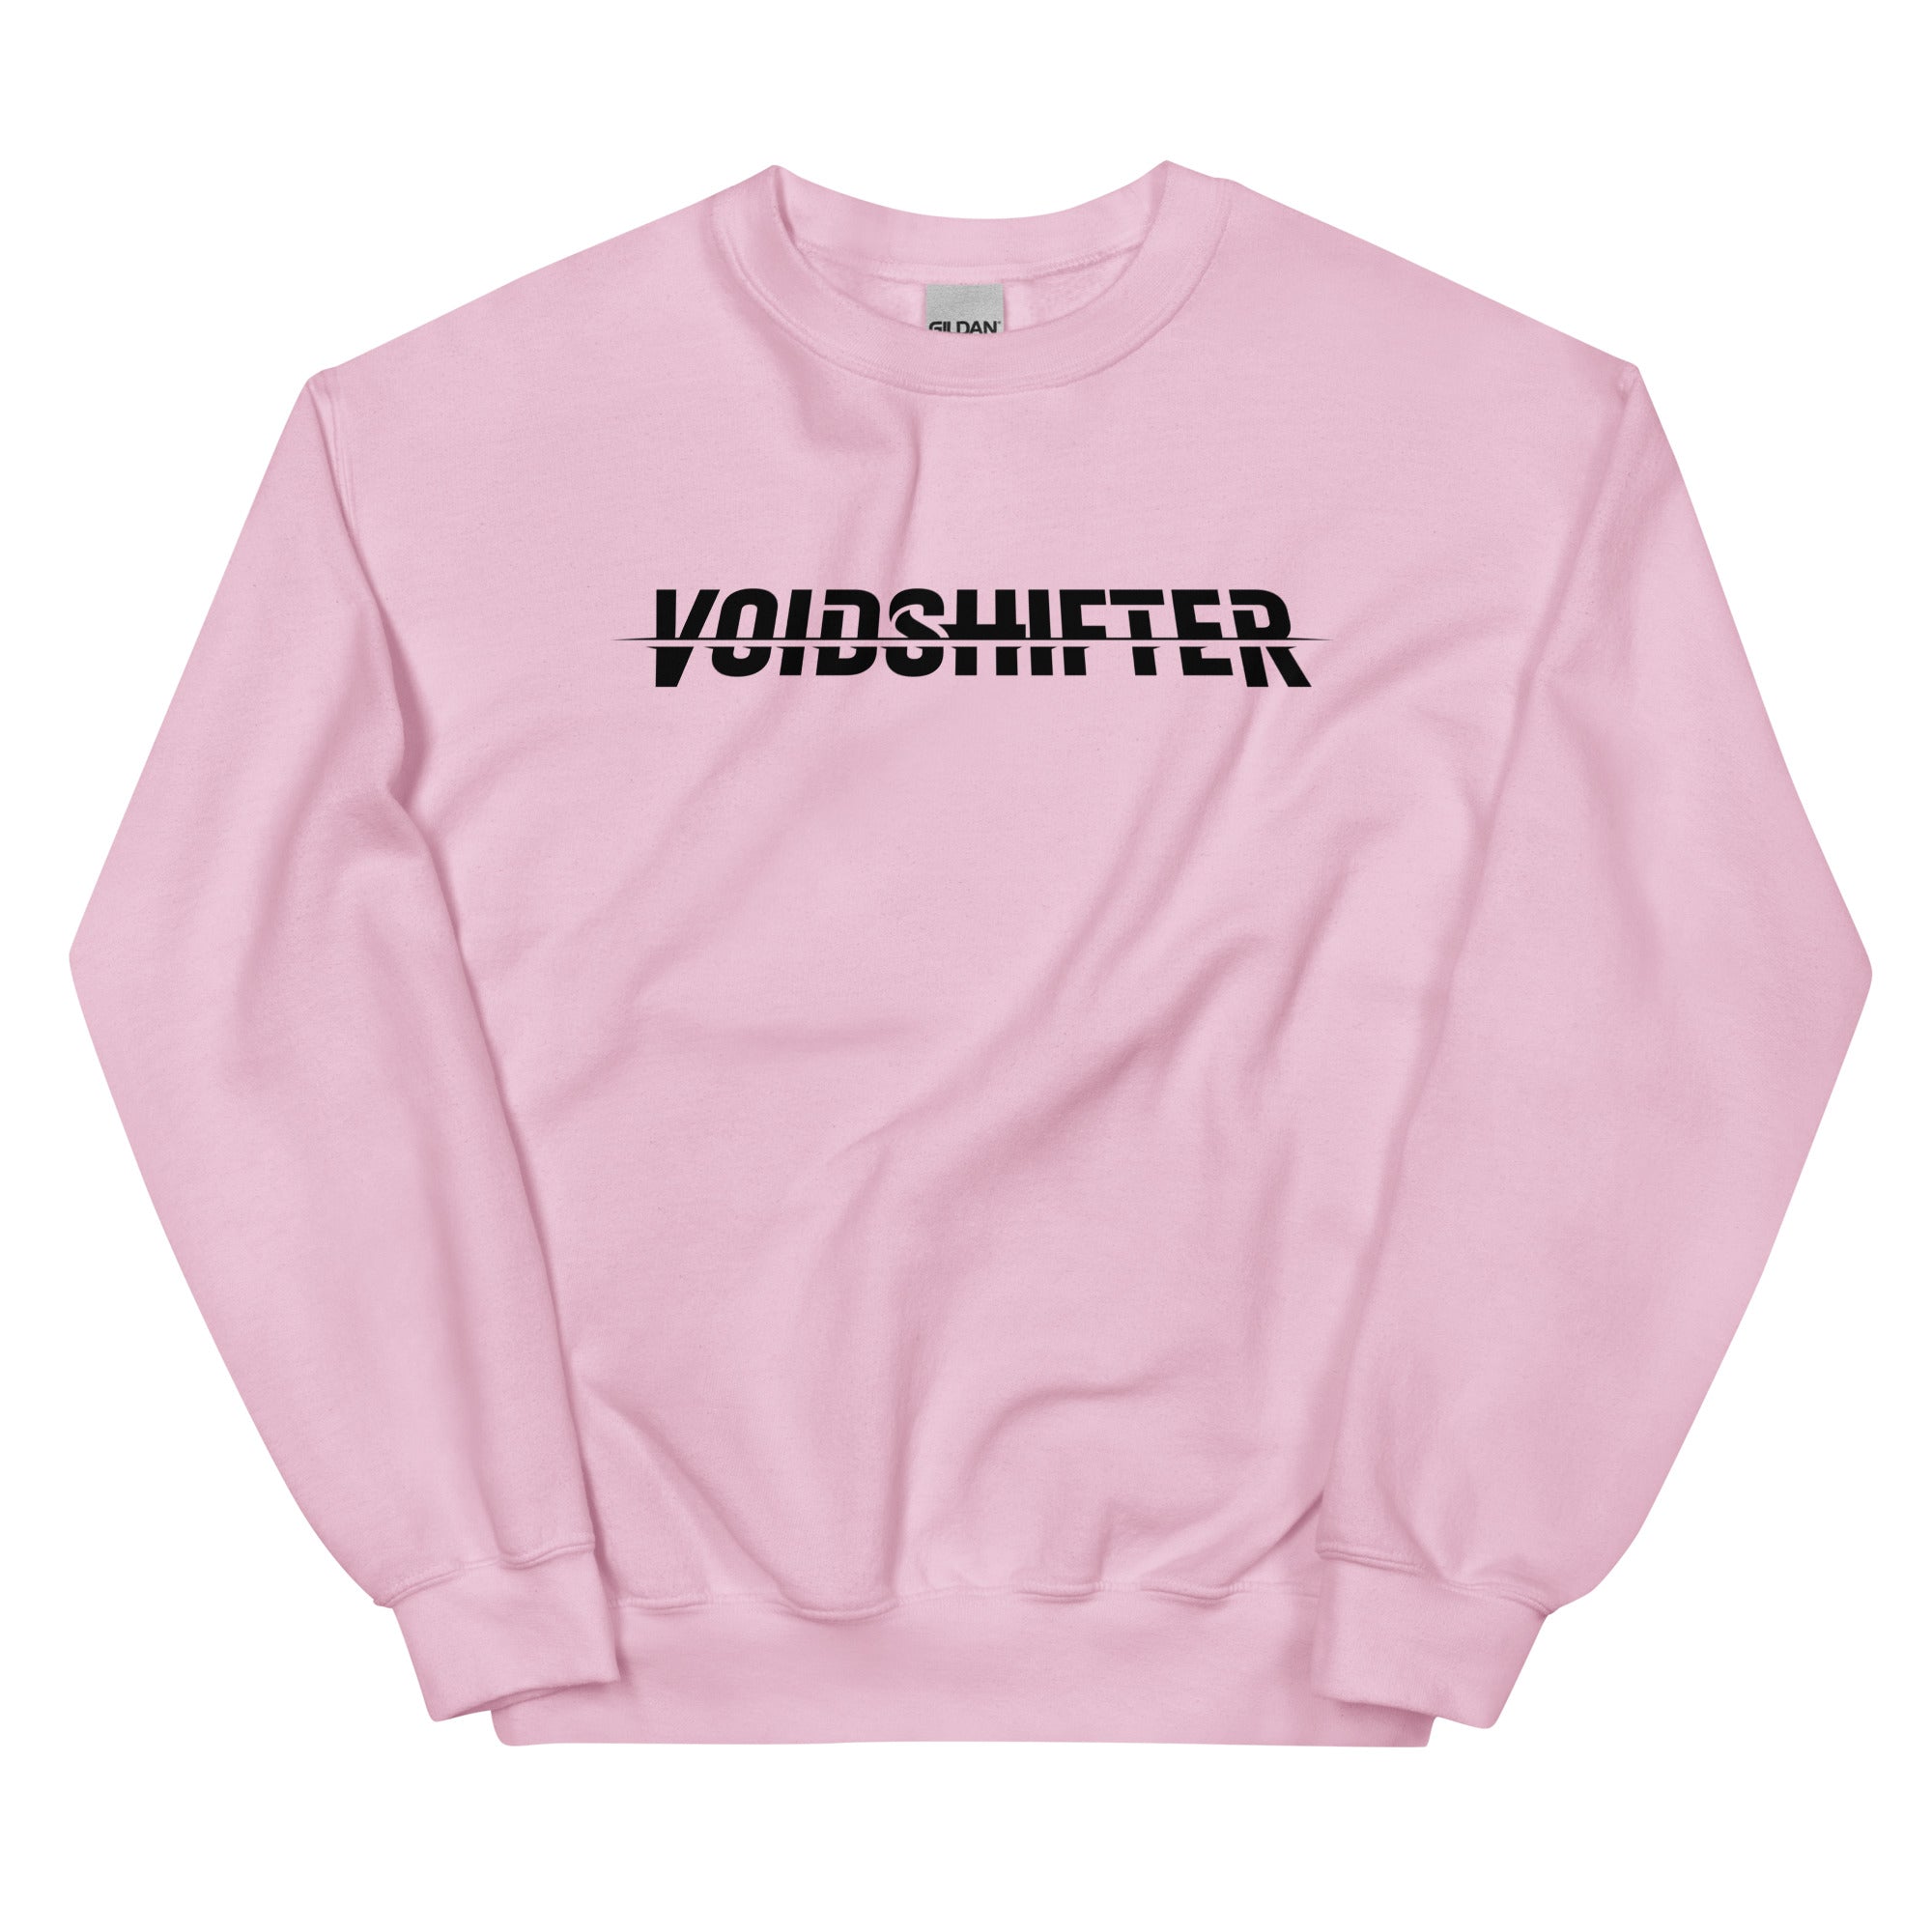 Voidshifter - Unisex Sweatshirt